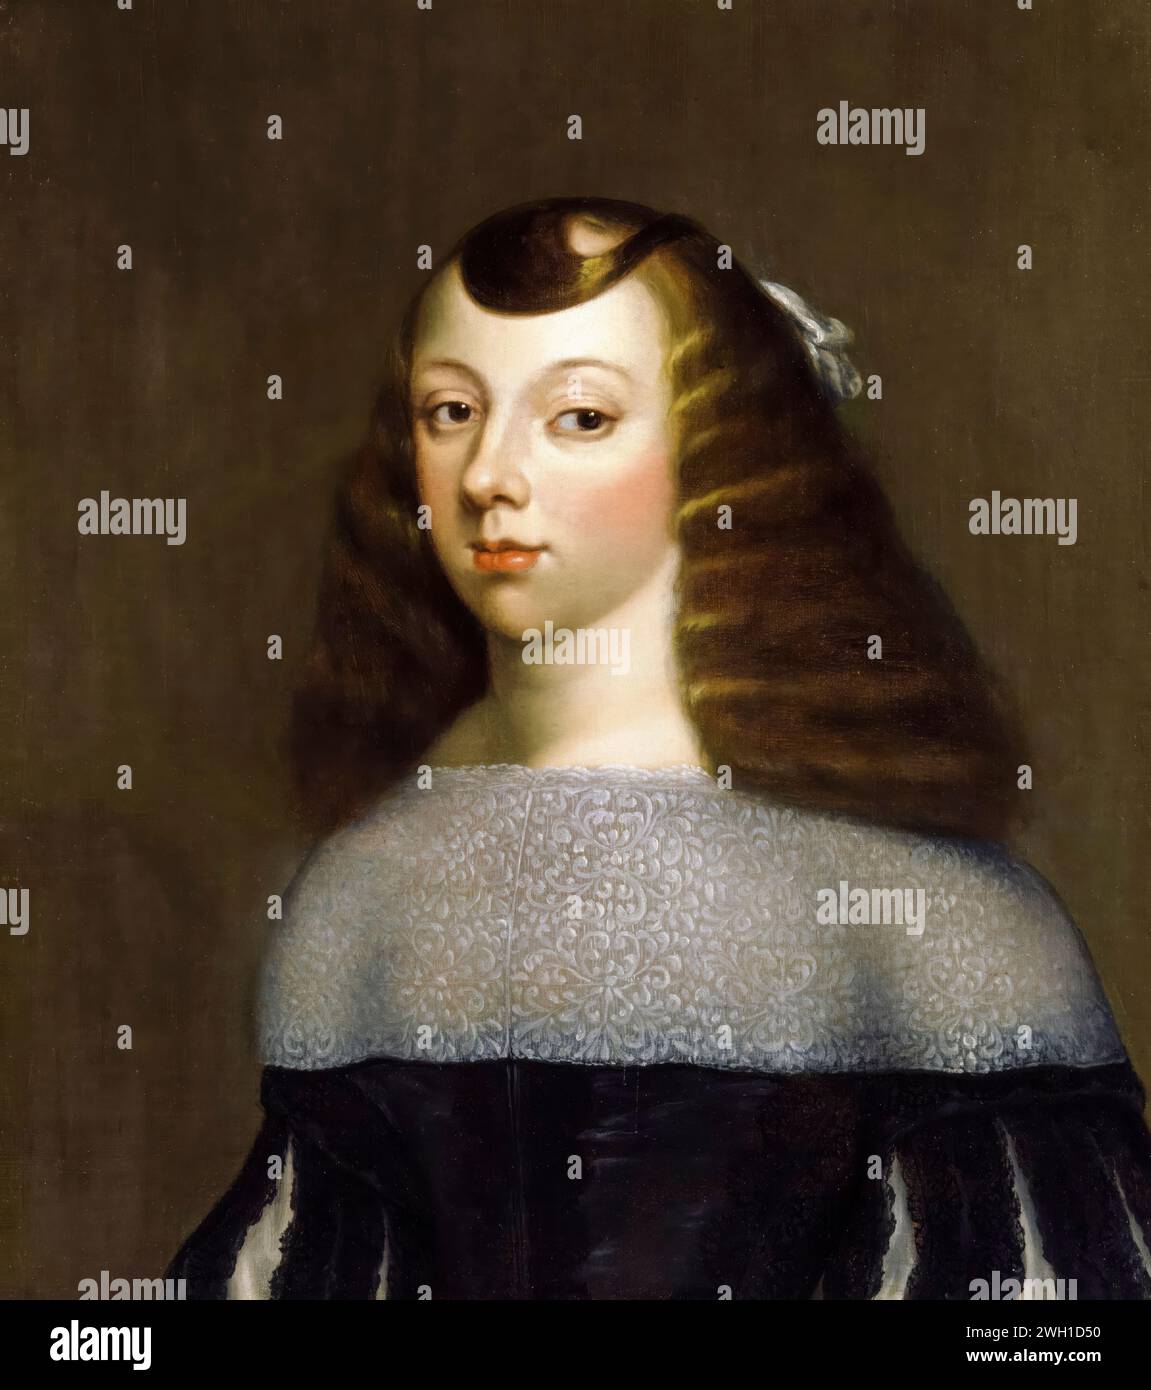 Catherine de Bragance (1638-1705), reine consort d'Angleterre, d'Écosse et d'Irlande (1662-1685), portrait peint à l'huile sur toile d'après Dirk Stoop, 1660-1661 Banque D'Images